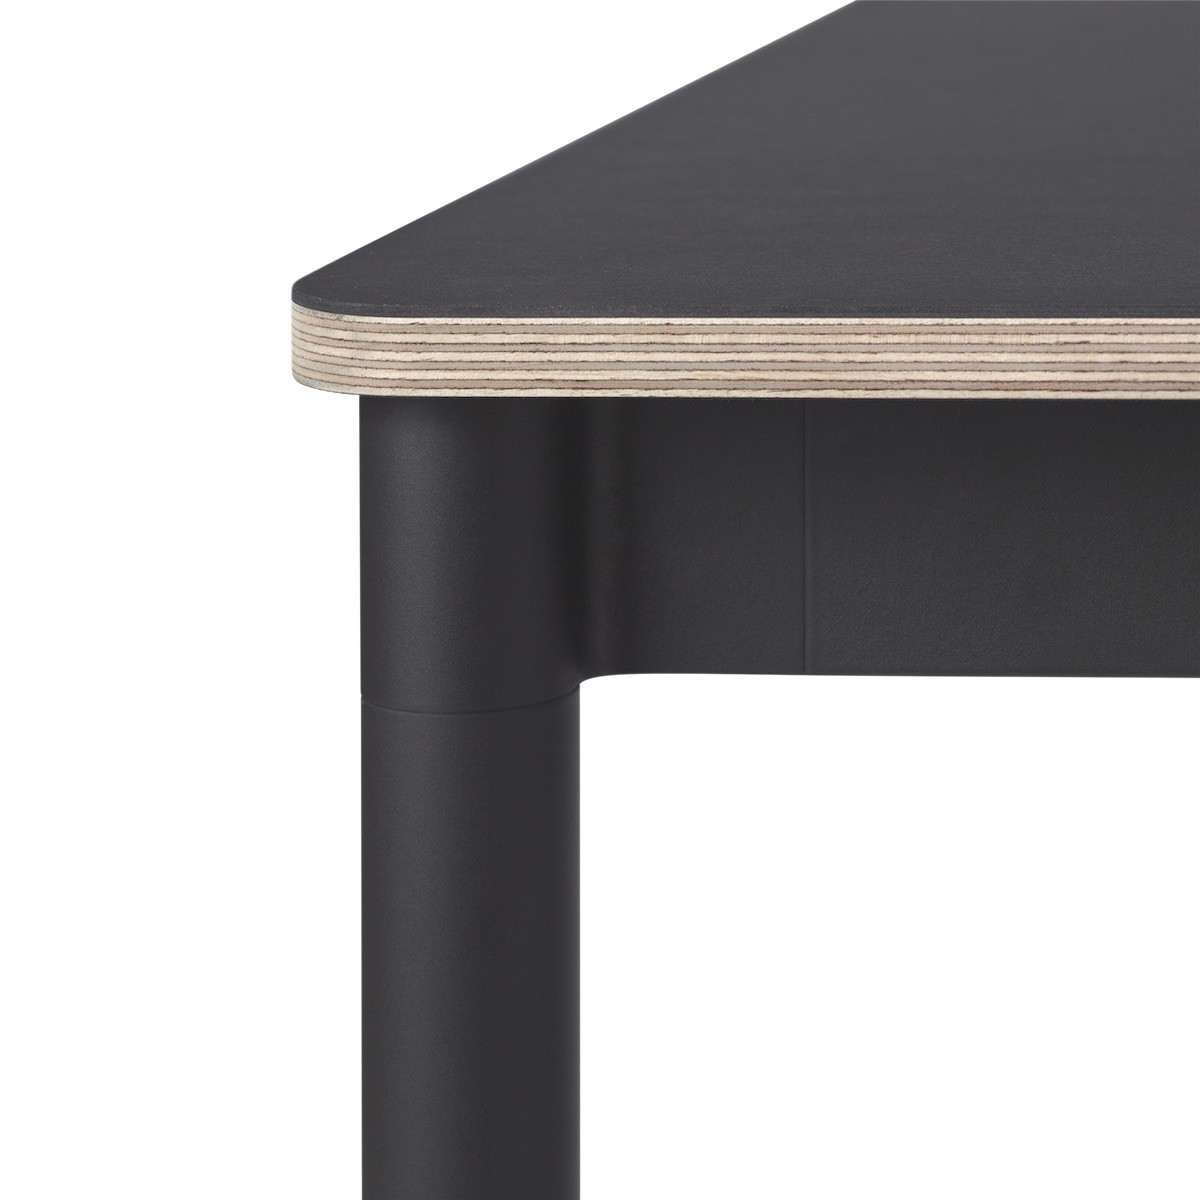 Noir (linoleum) / Bois / Noir – Table Base 250 x 90 x H73 cm